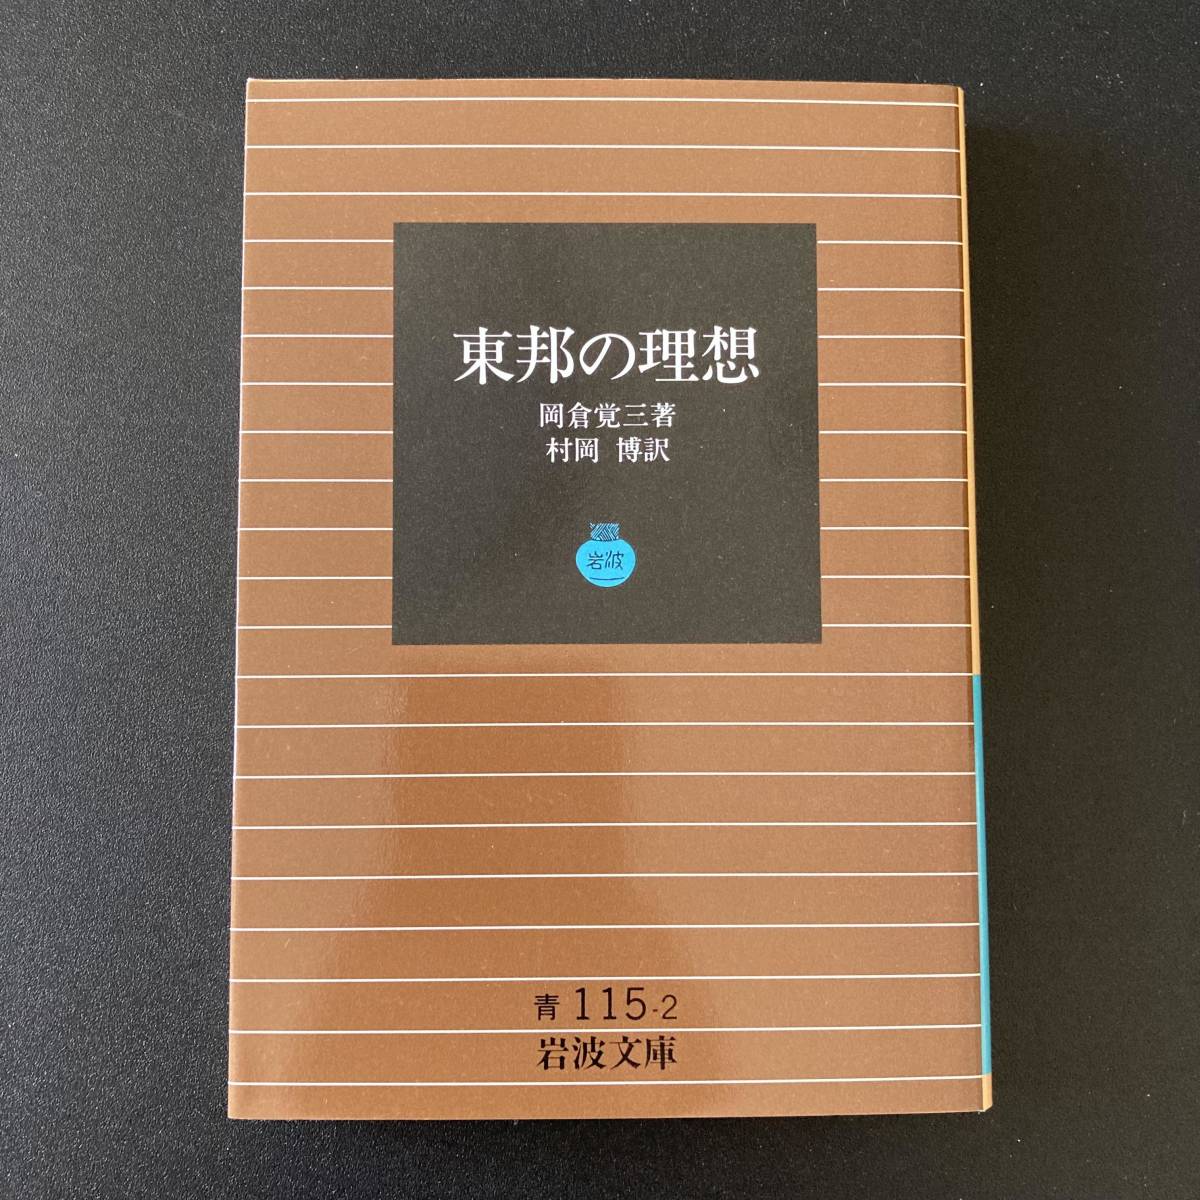 東邦の理想 (岩波文庫) / 岡倉 覚三 (著), 村岡 博 (訳)